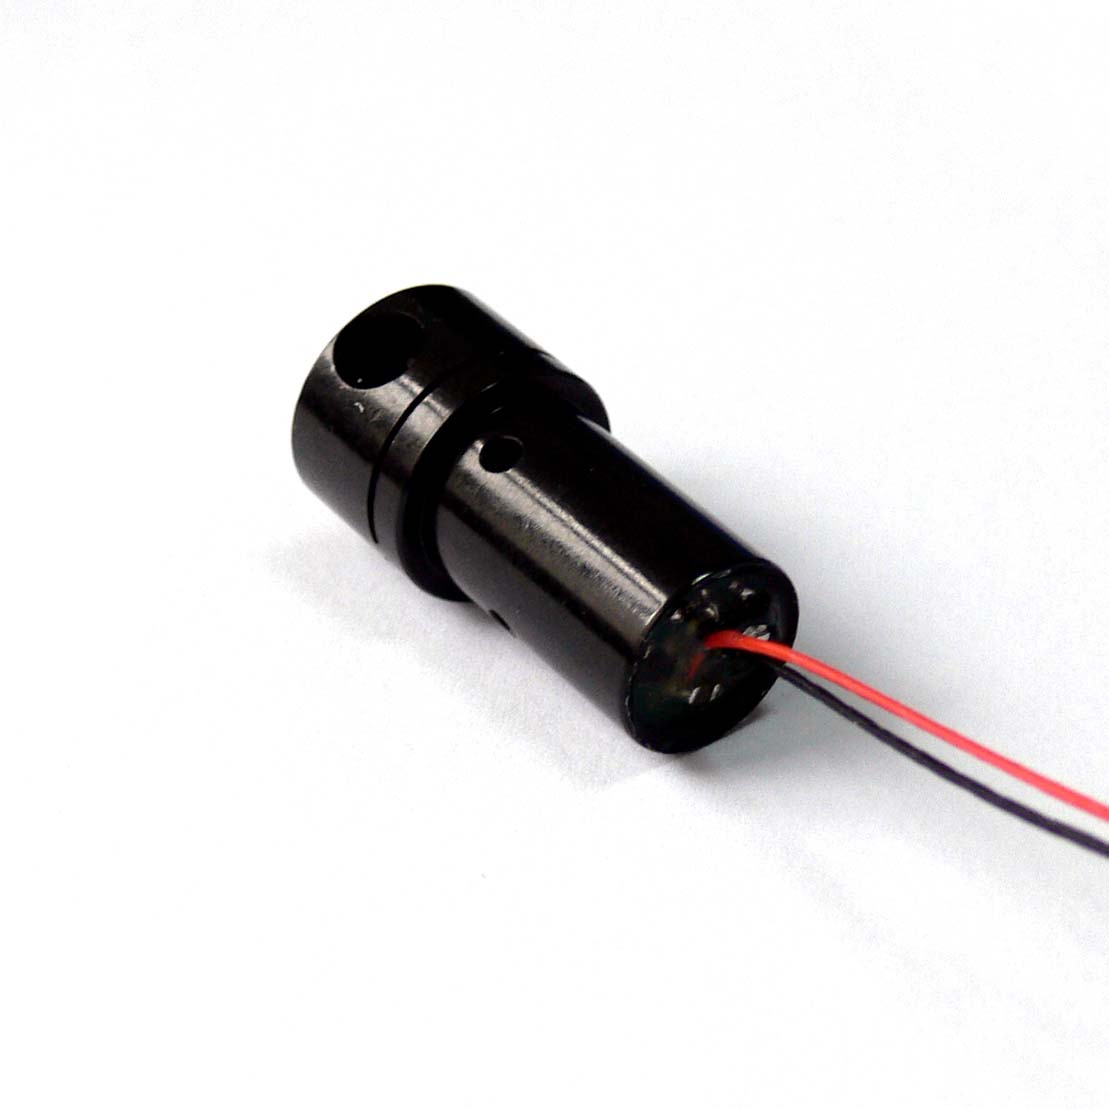 用于激光测量装置和激光对准工具的360度红线激光器